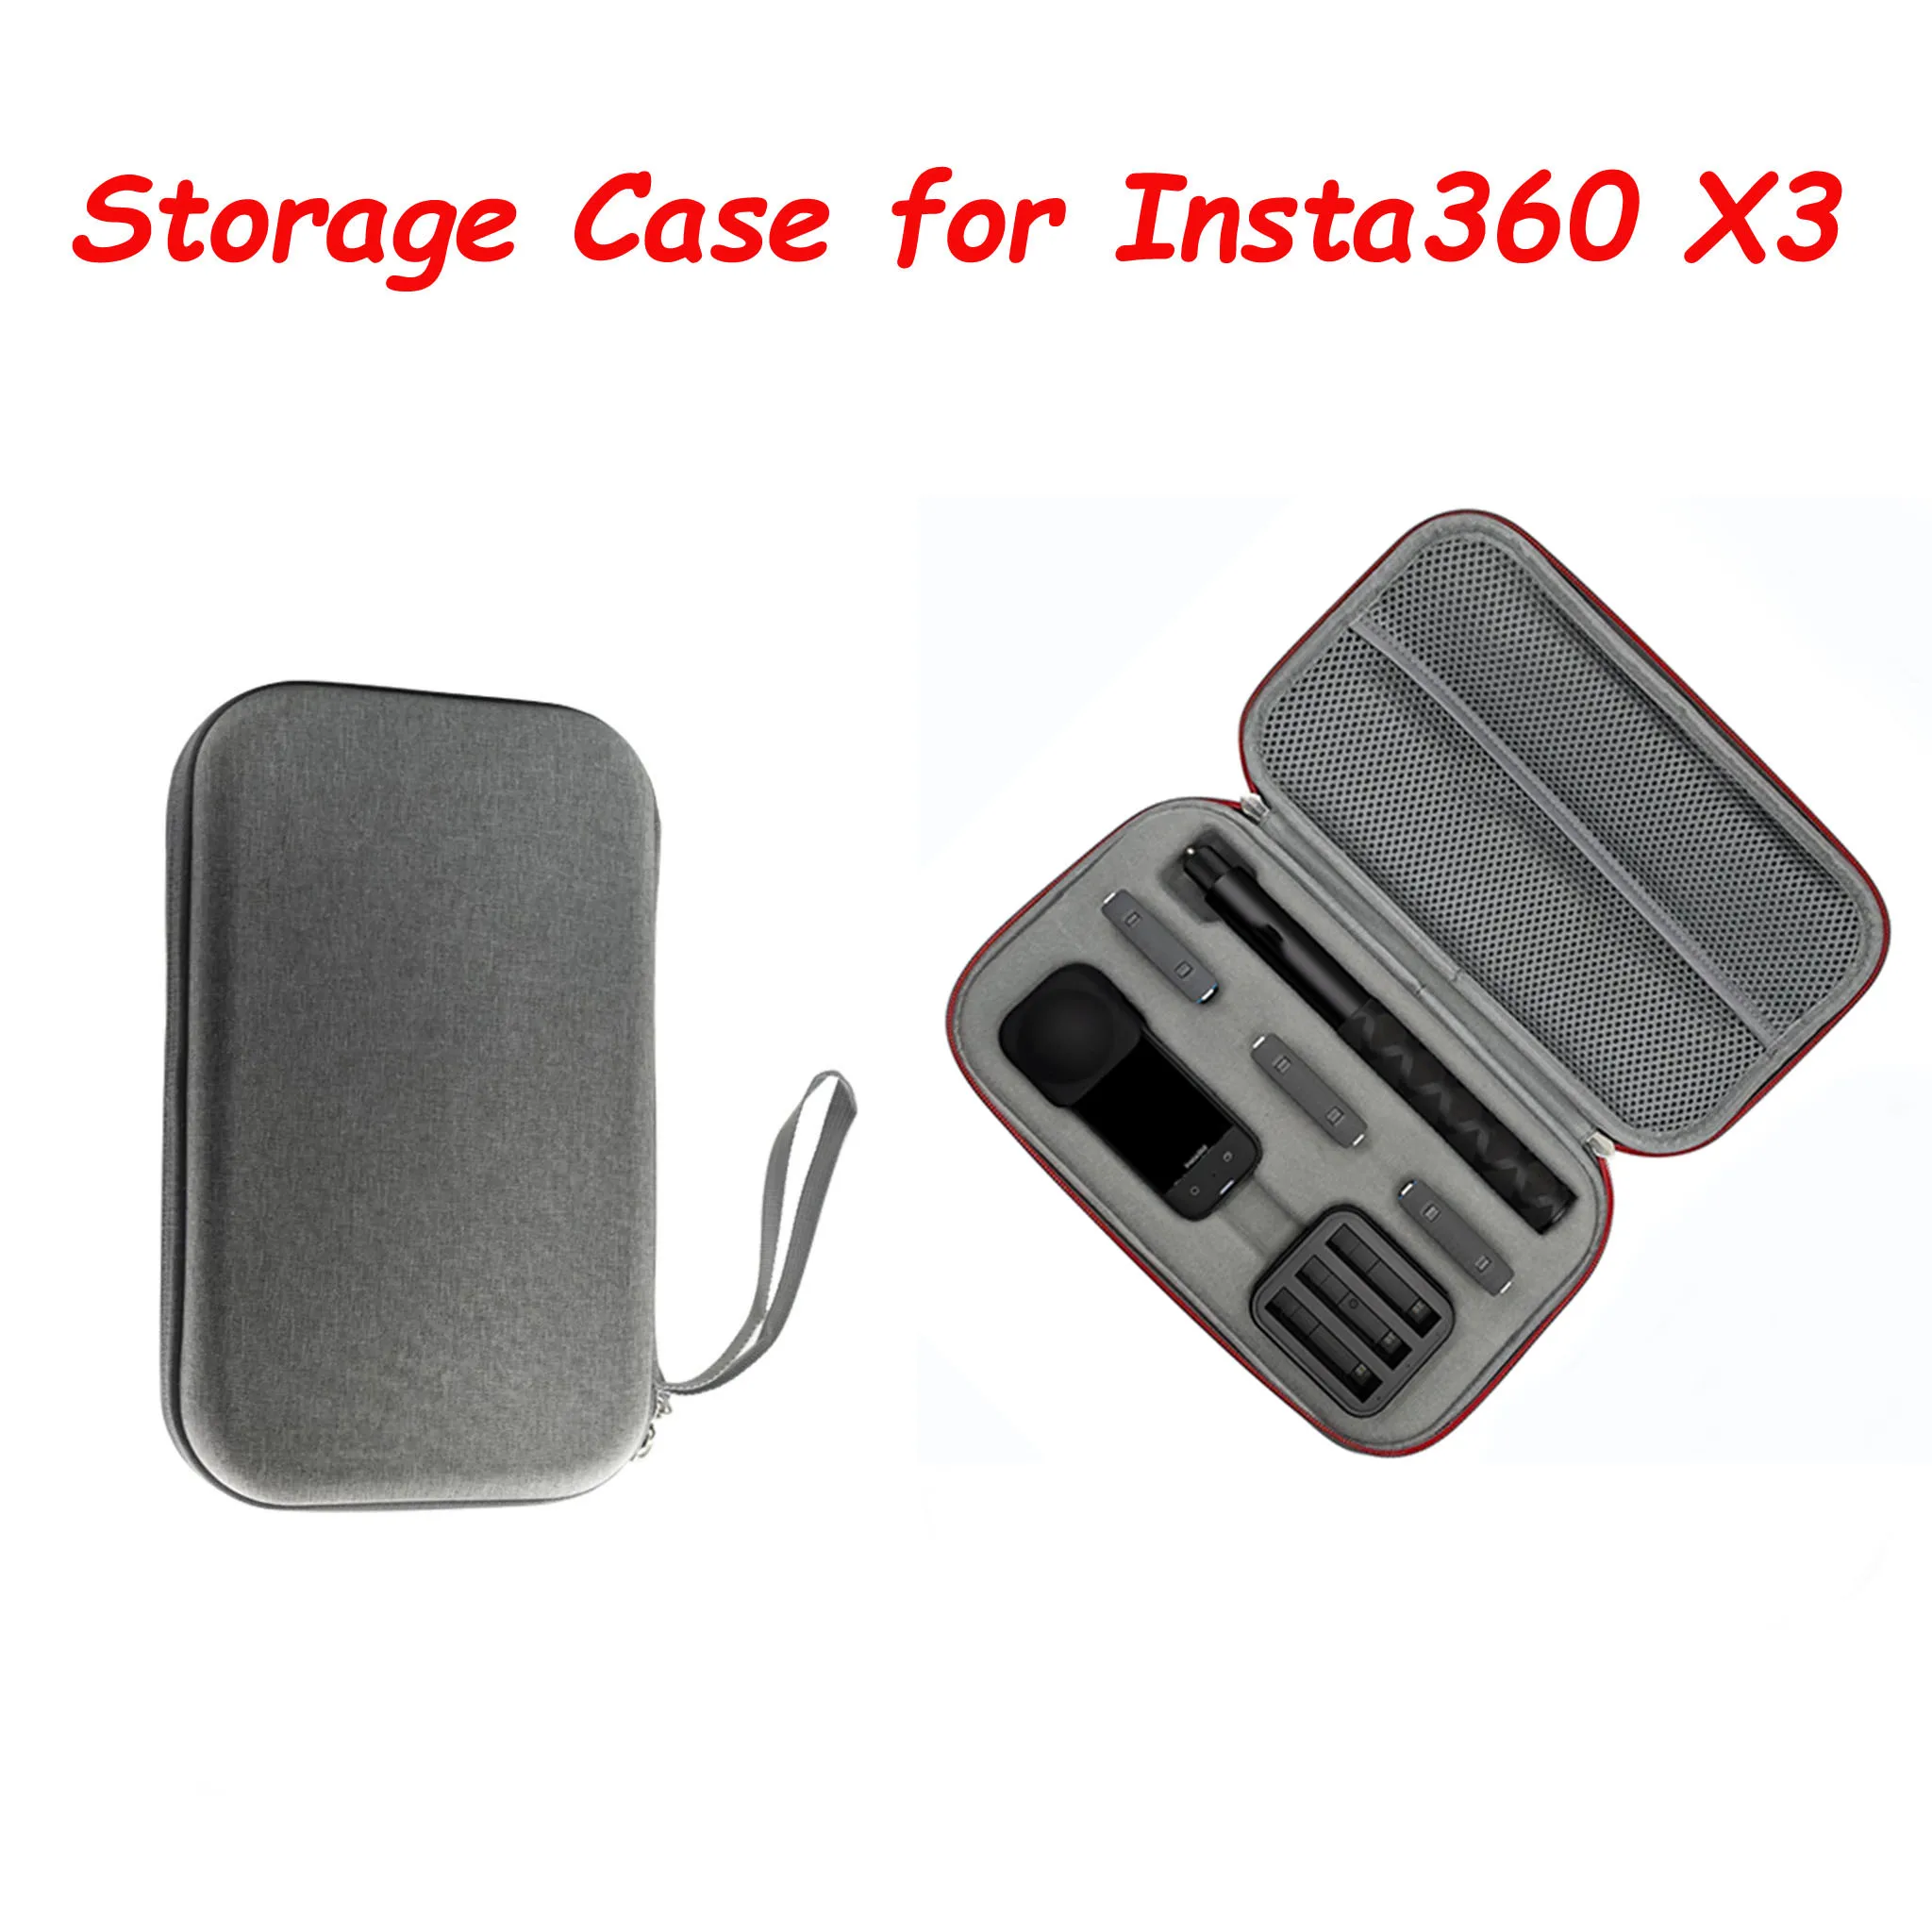 

Водонепроницаемый чехол для камеры Insta360 X3, сумка для хранения аксессуаров и экшн-камер